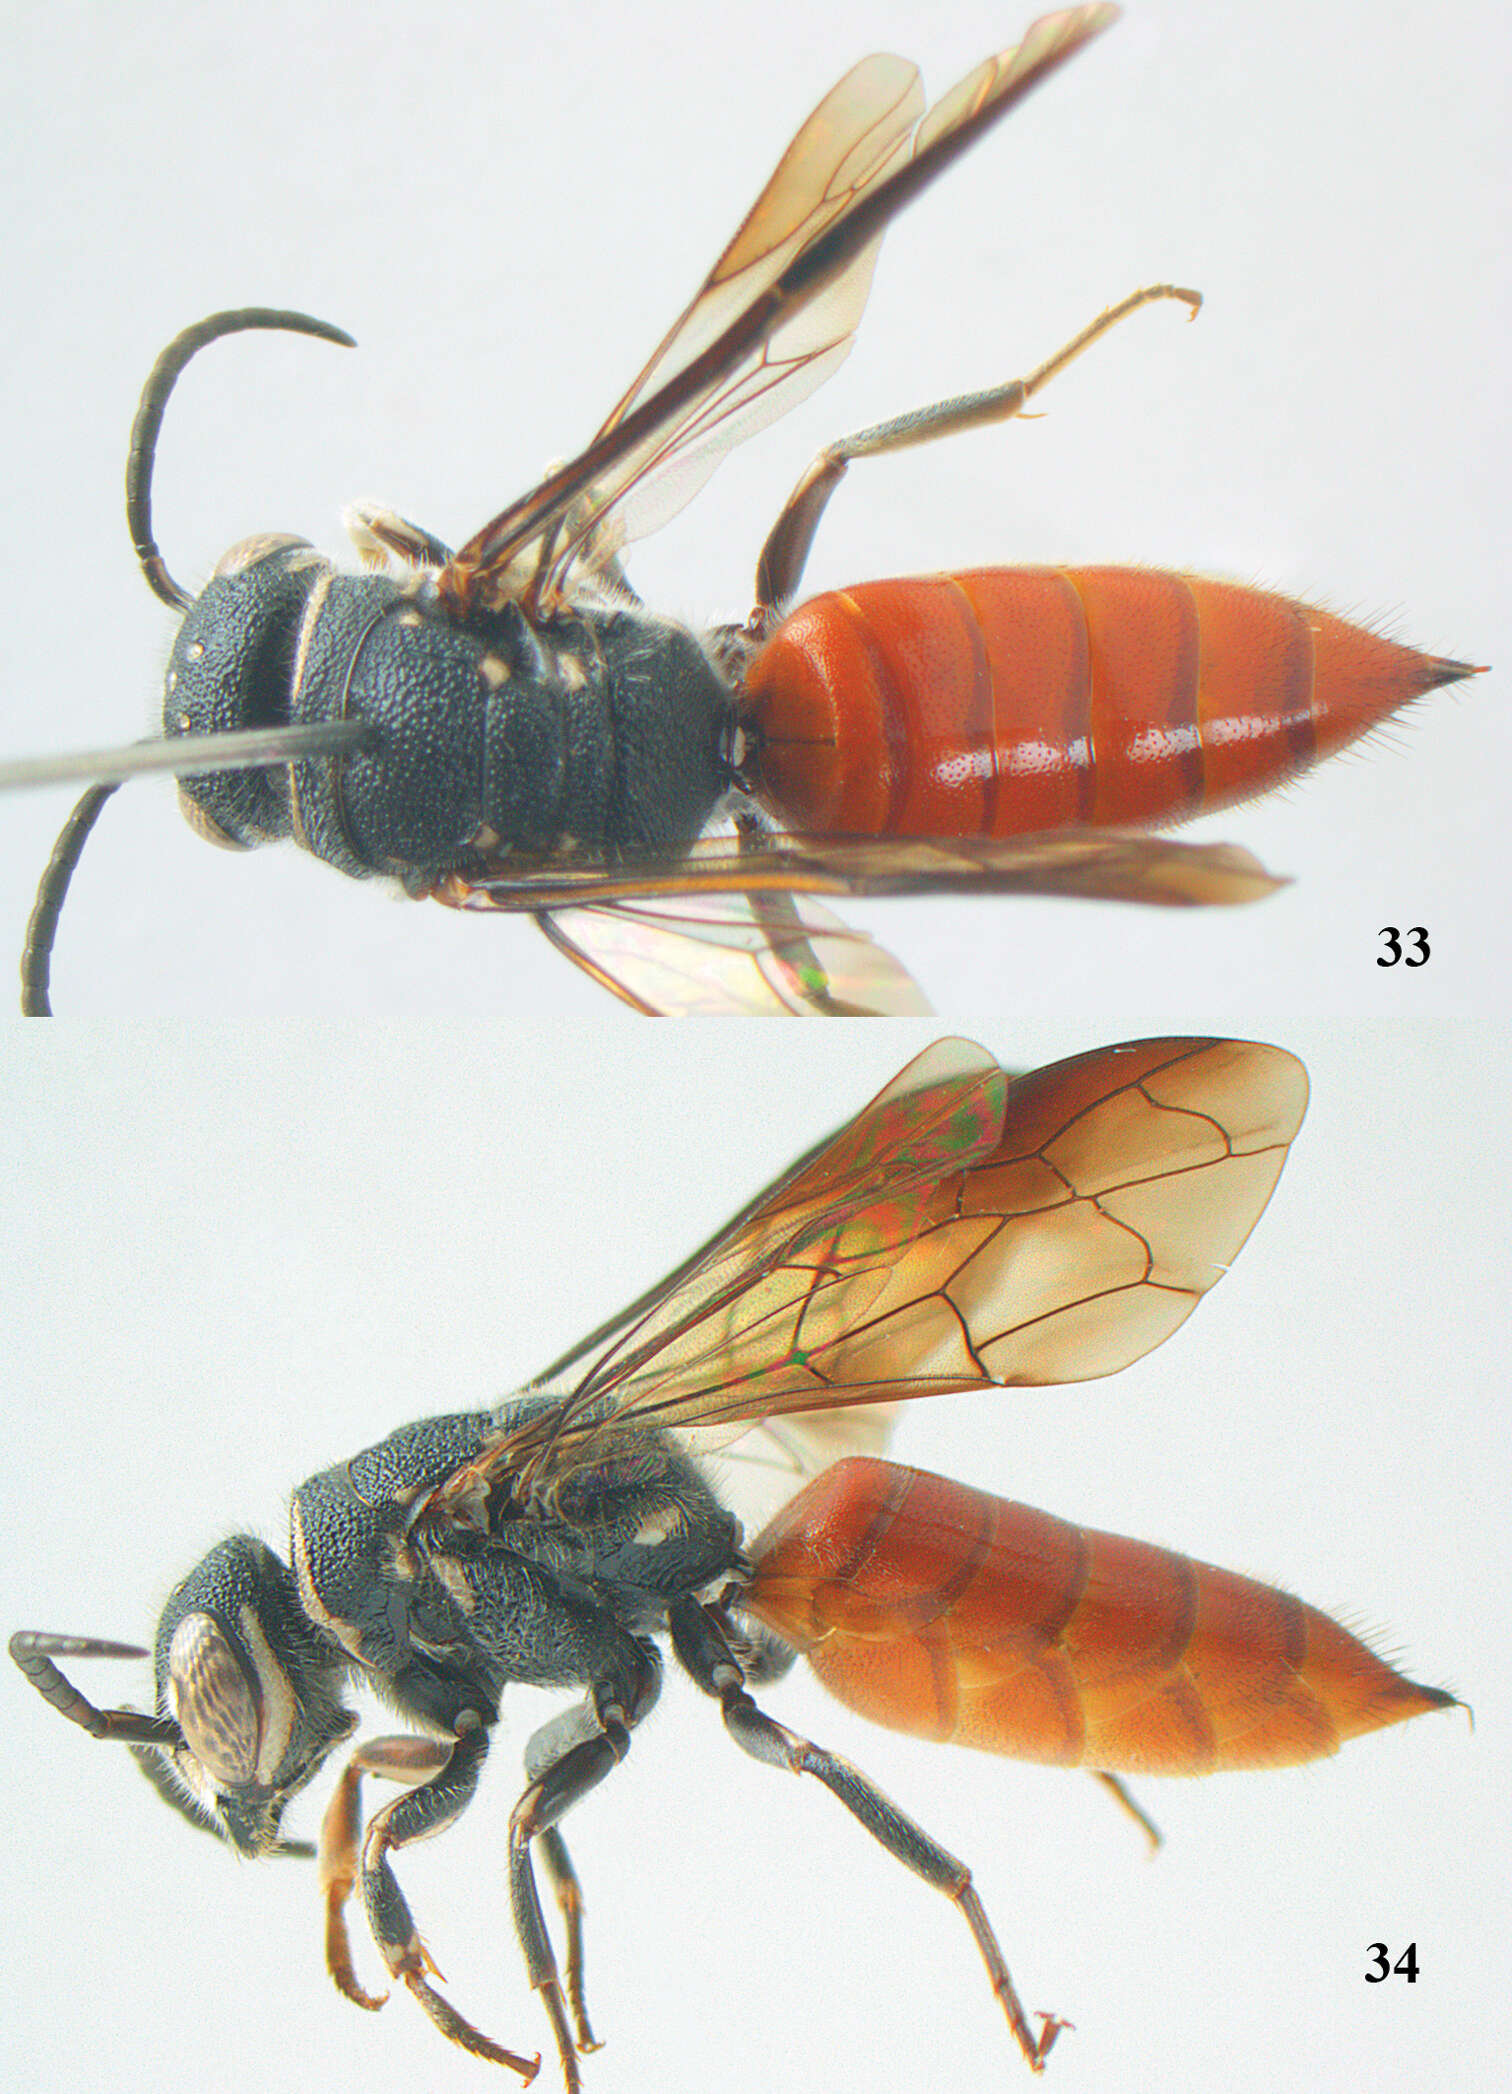 Image of sapygid wasps